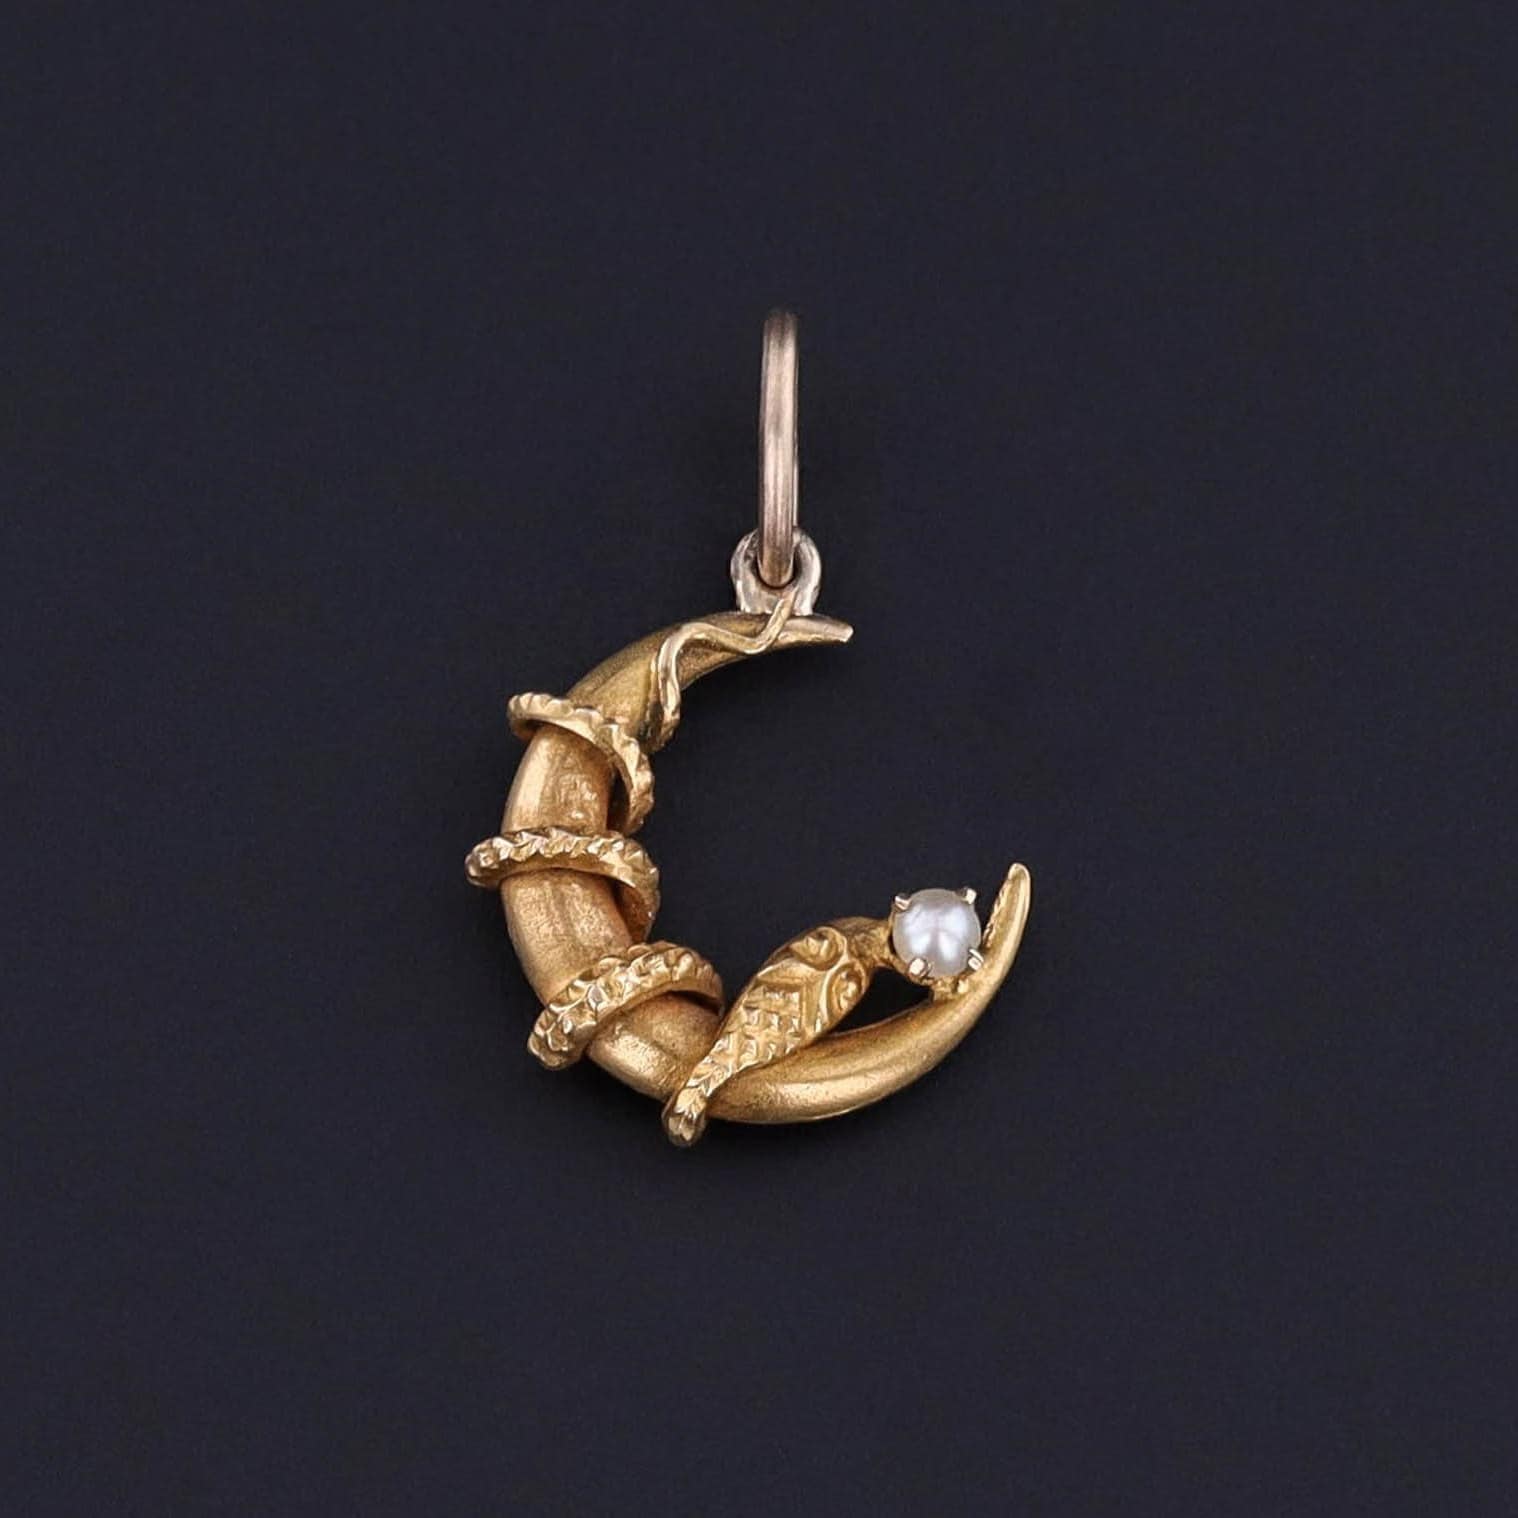 Antique Snake Crescent Charm of 14k Gold